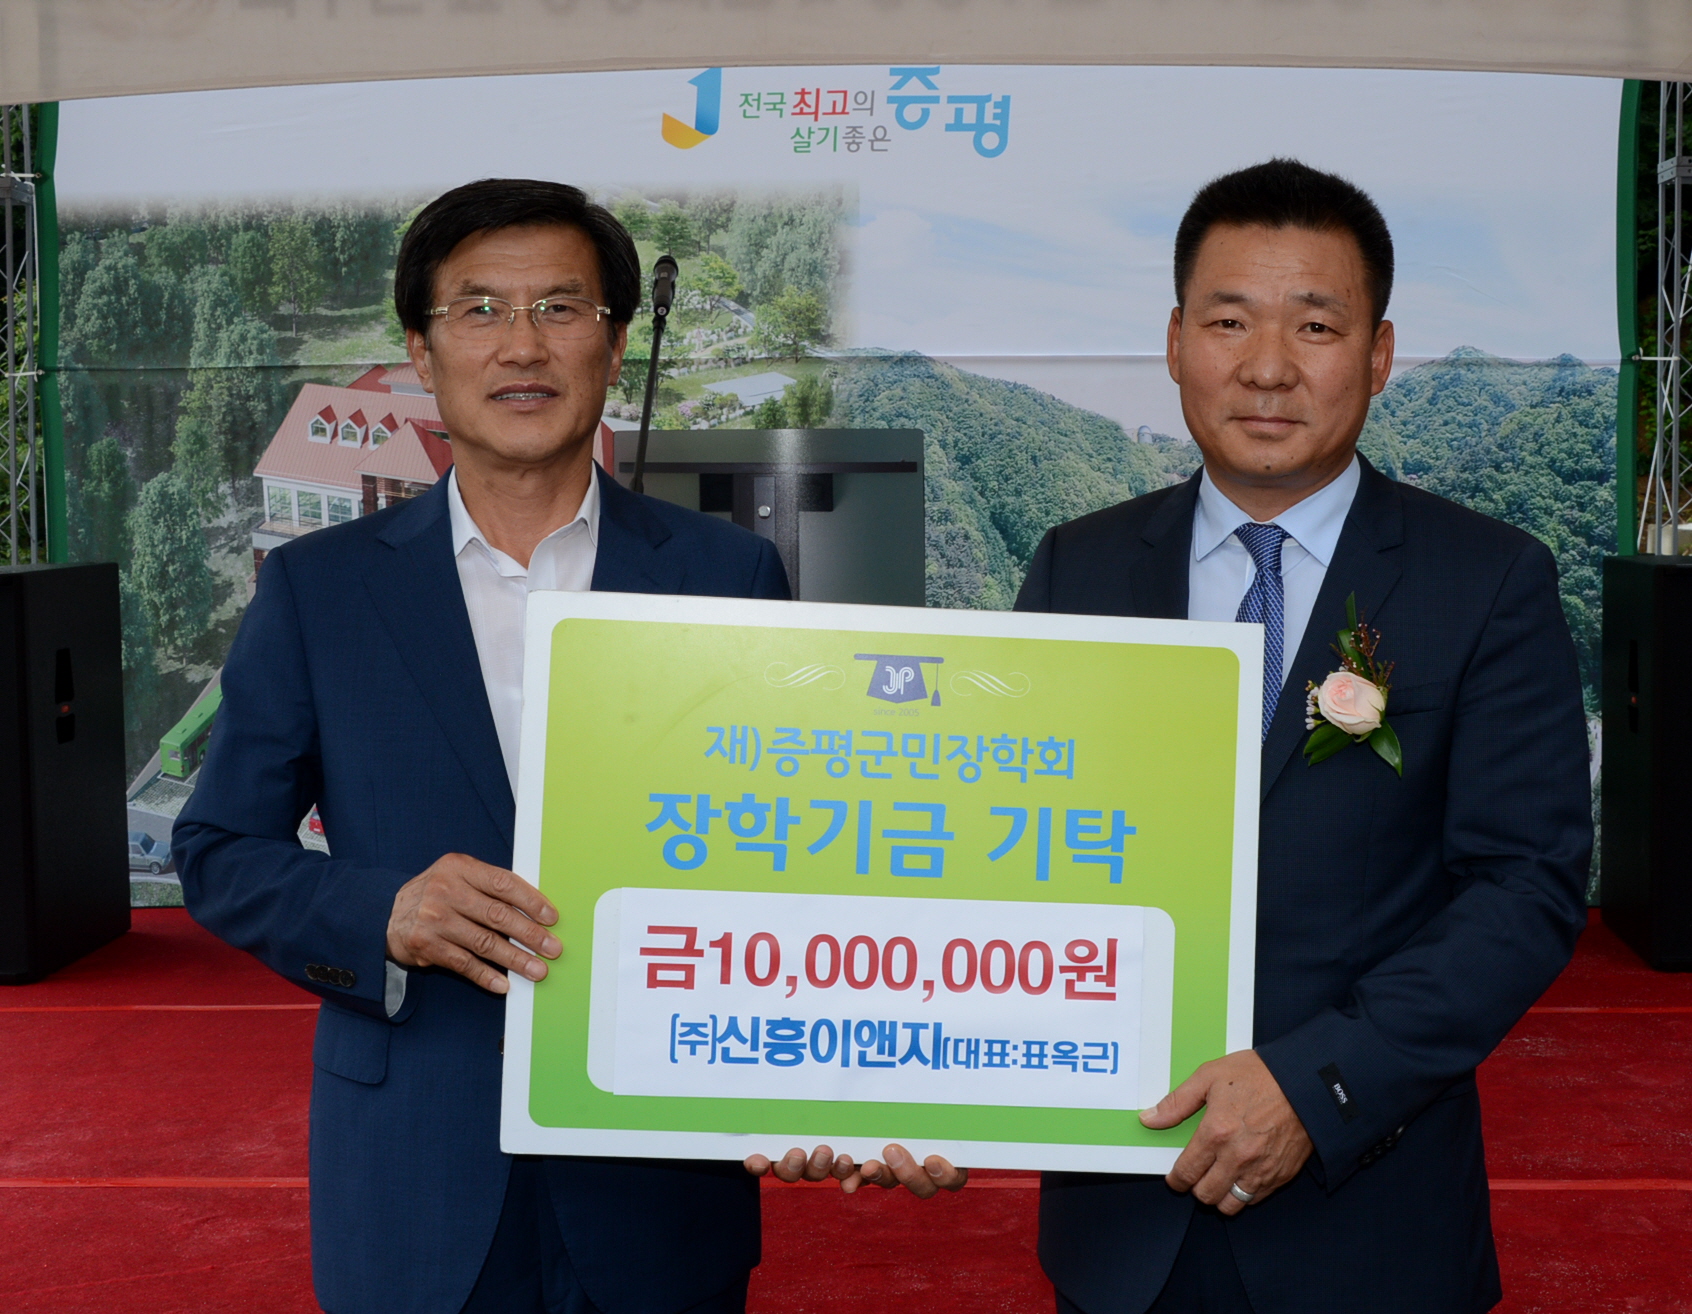 ㈜ 신흥이앤지(대표 표옥근) 장학금 1,000만원 기탁